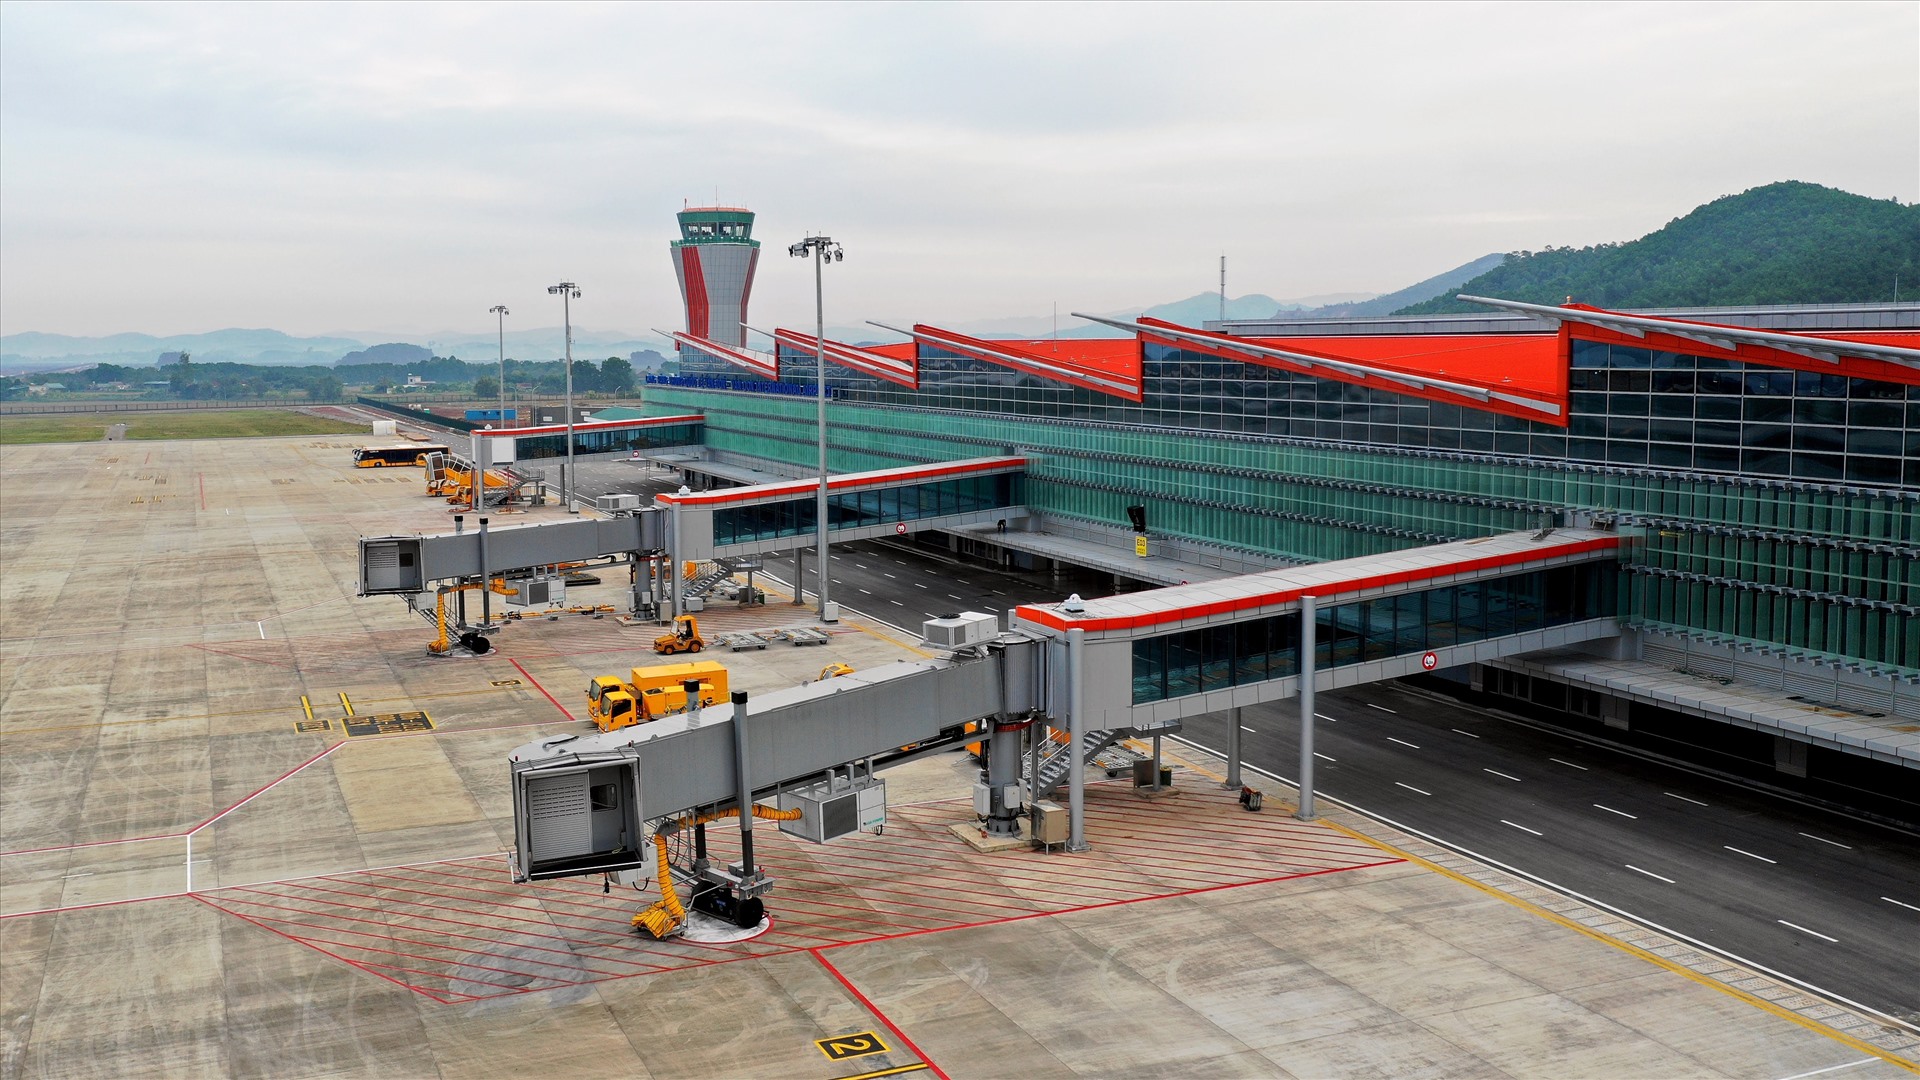 Sân bay quốc tế Vân Đồn - sân bay tư nhân đầu tiên và duy nhất hiện nay của cả nước. Ảnh: Nguyễn Hùng